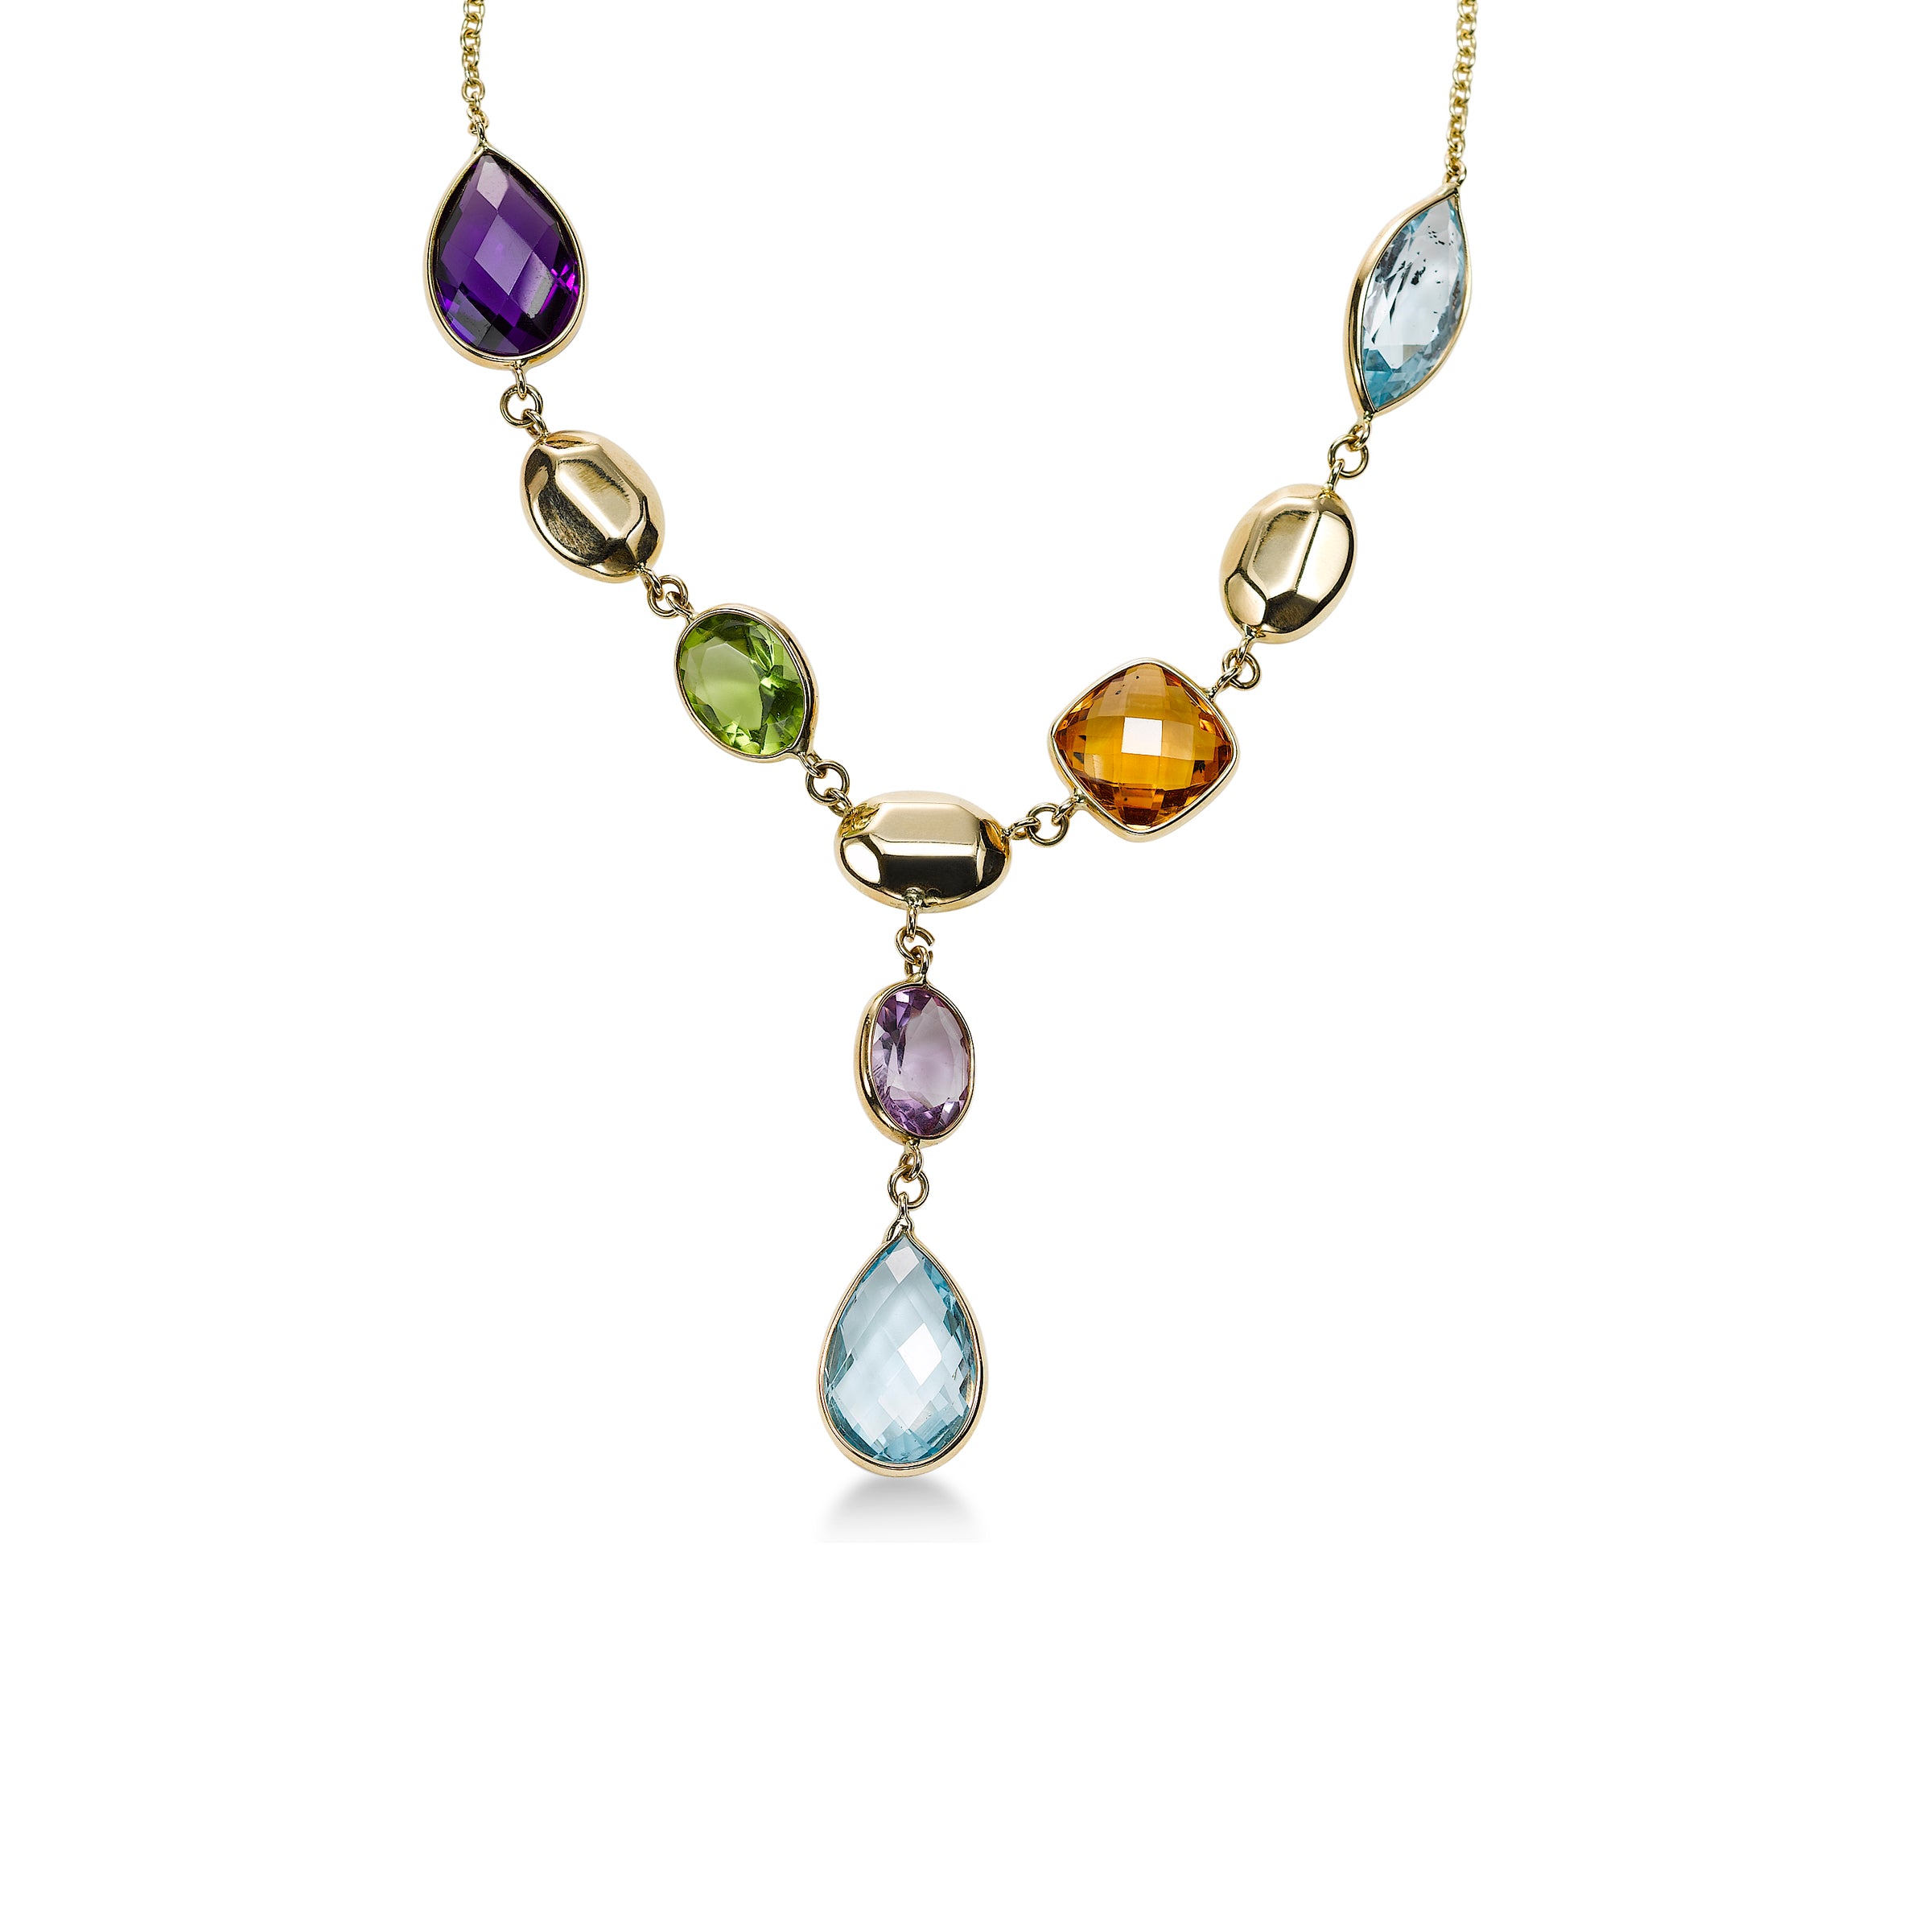 Multi Gemstone Cluster Pendant Necklace | Breathe Autumn Rain Jewelry